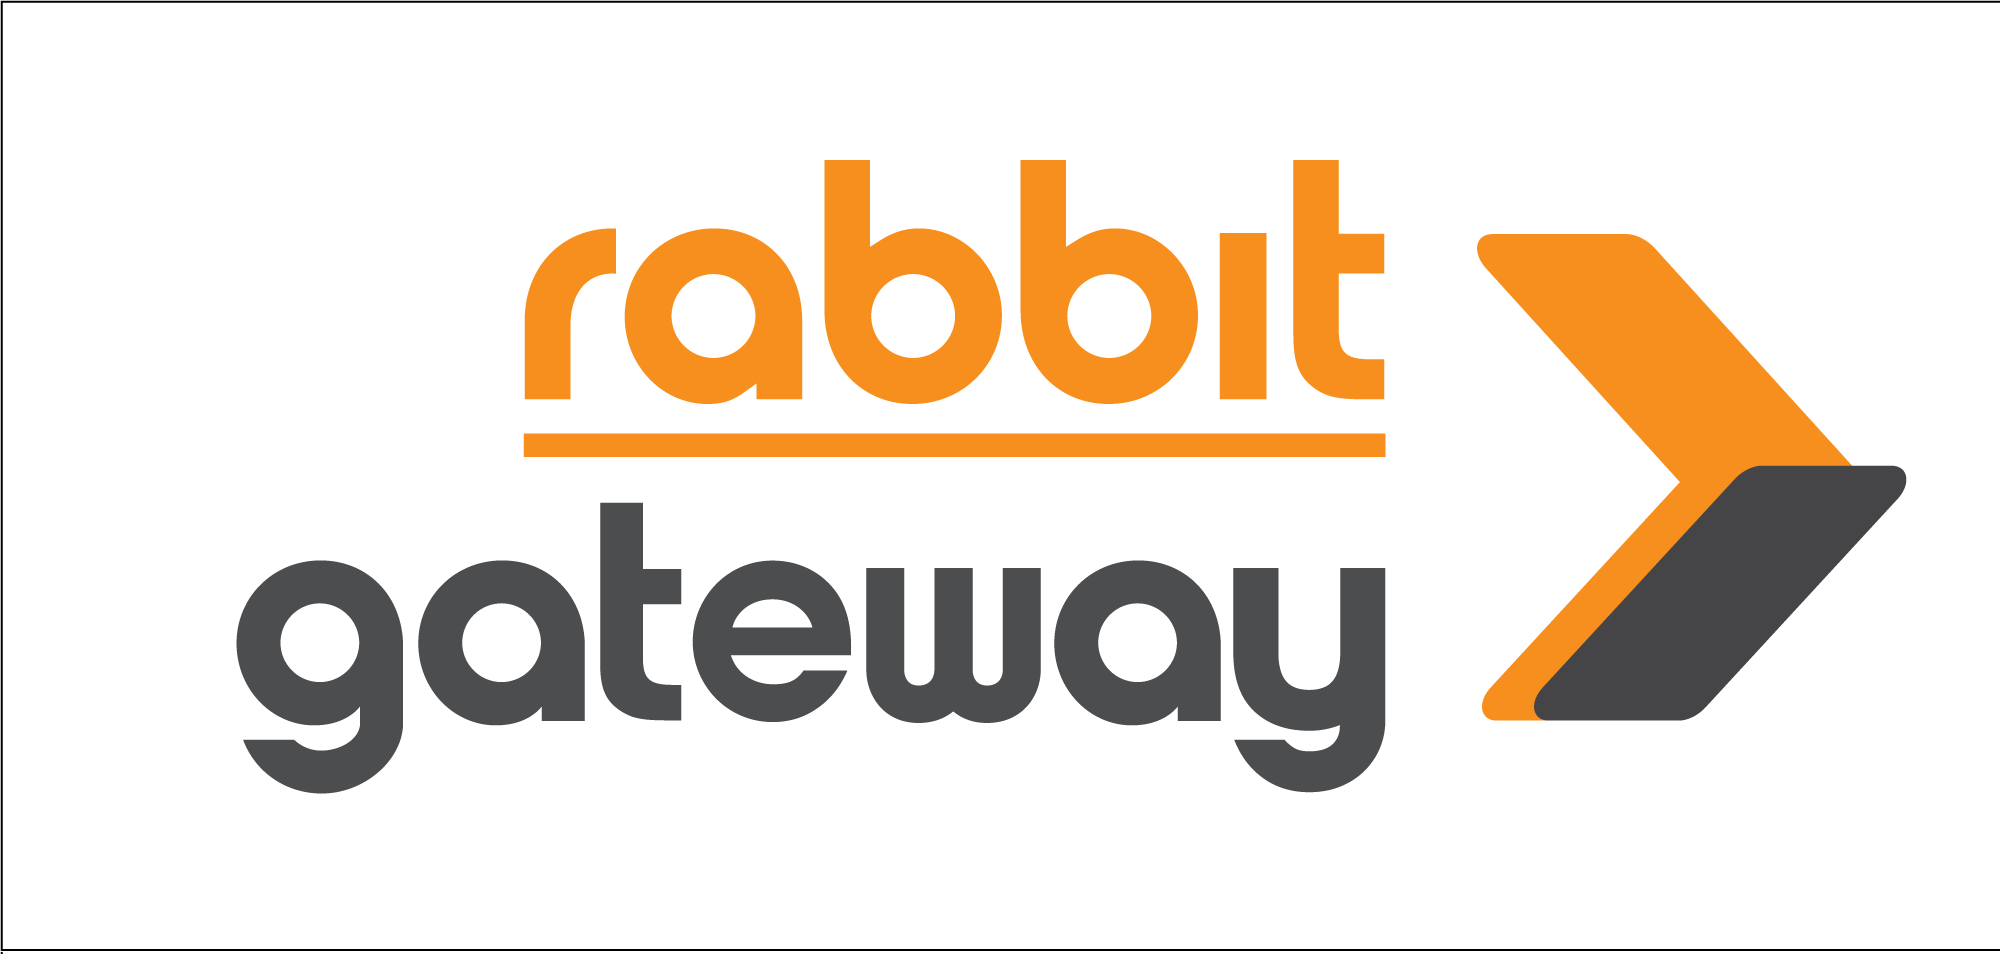 แรบบิท เปิดแผนปี 67 ส่งบริการใหม่ "Rabbit Gateway"รุกตลาด B2B ชูระบบการจัดการรับชำระเงินทางอิเล็กทรอนิกส์แบบครบวงจร